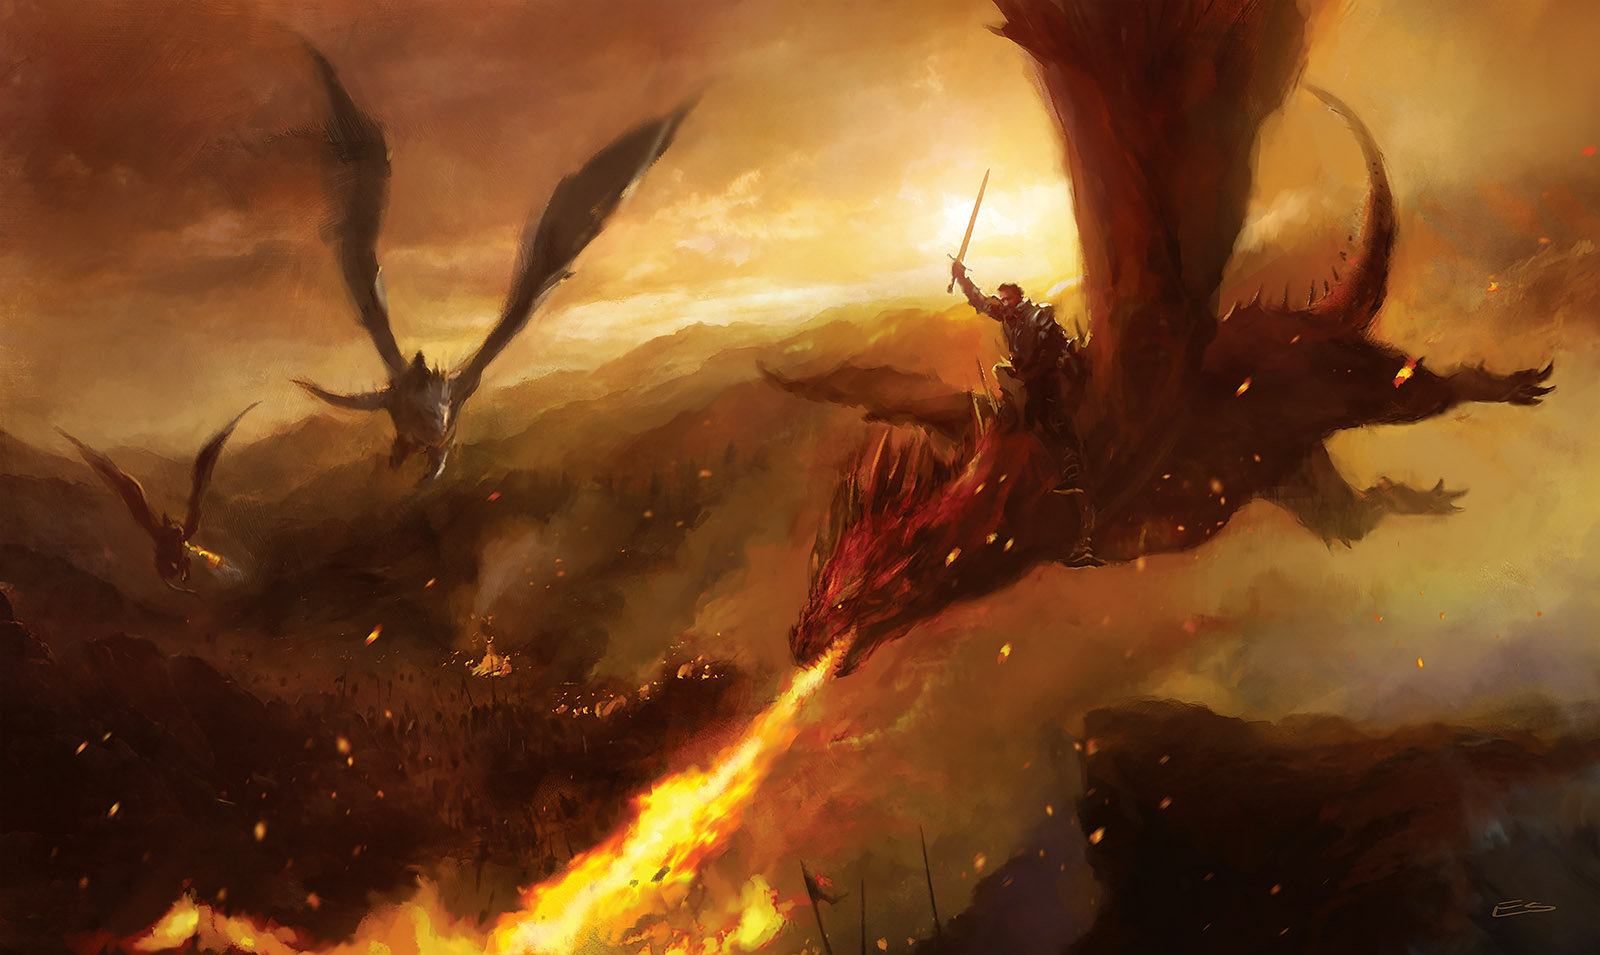 Điều khiến Targaryens trở nên vĩ đại chính là điều đã hủy diệt họ